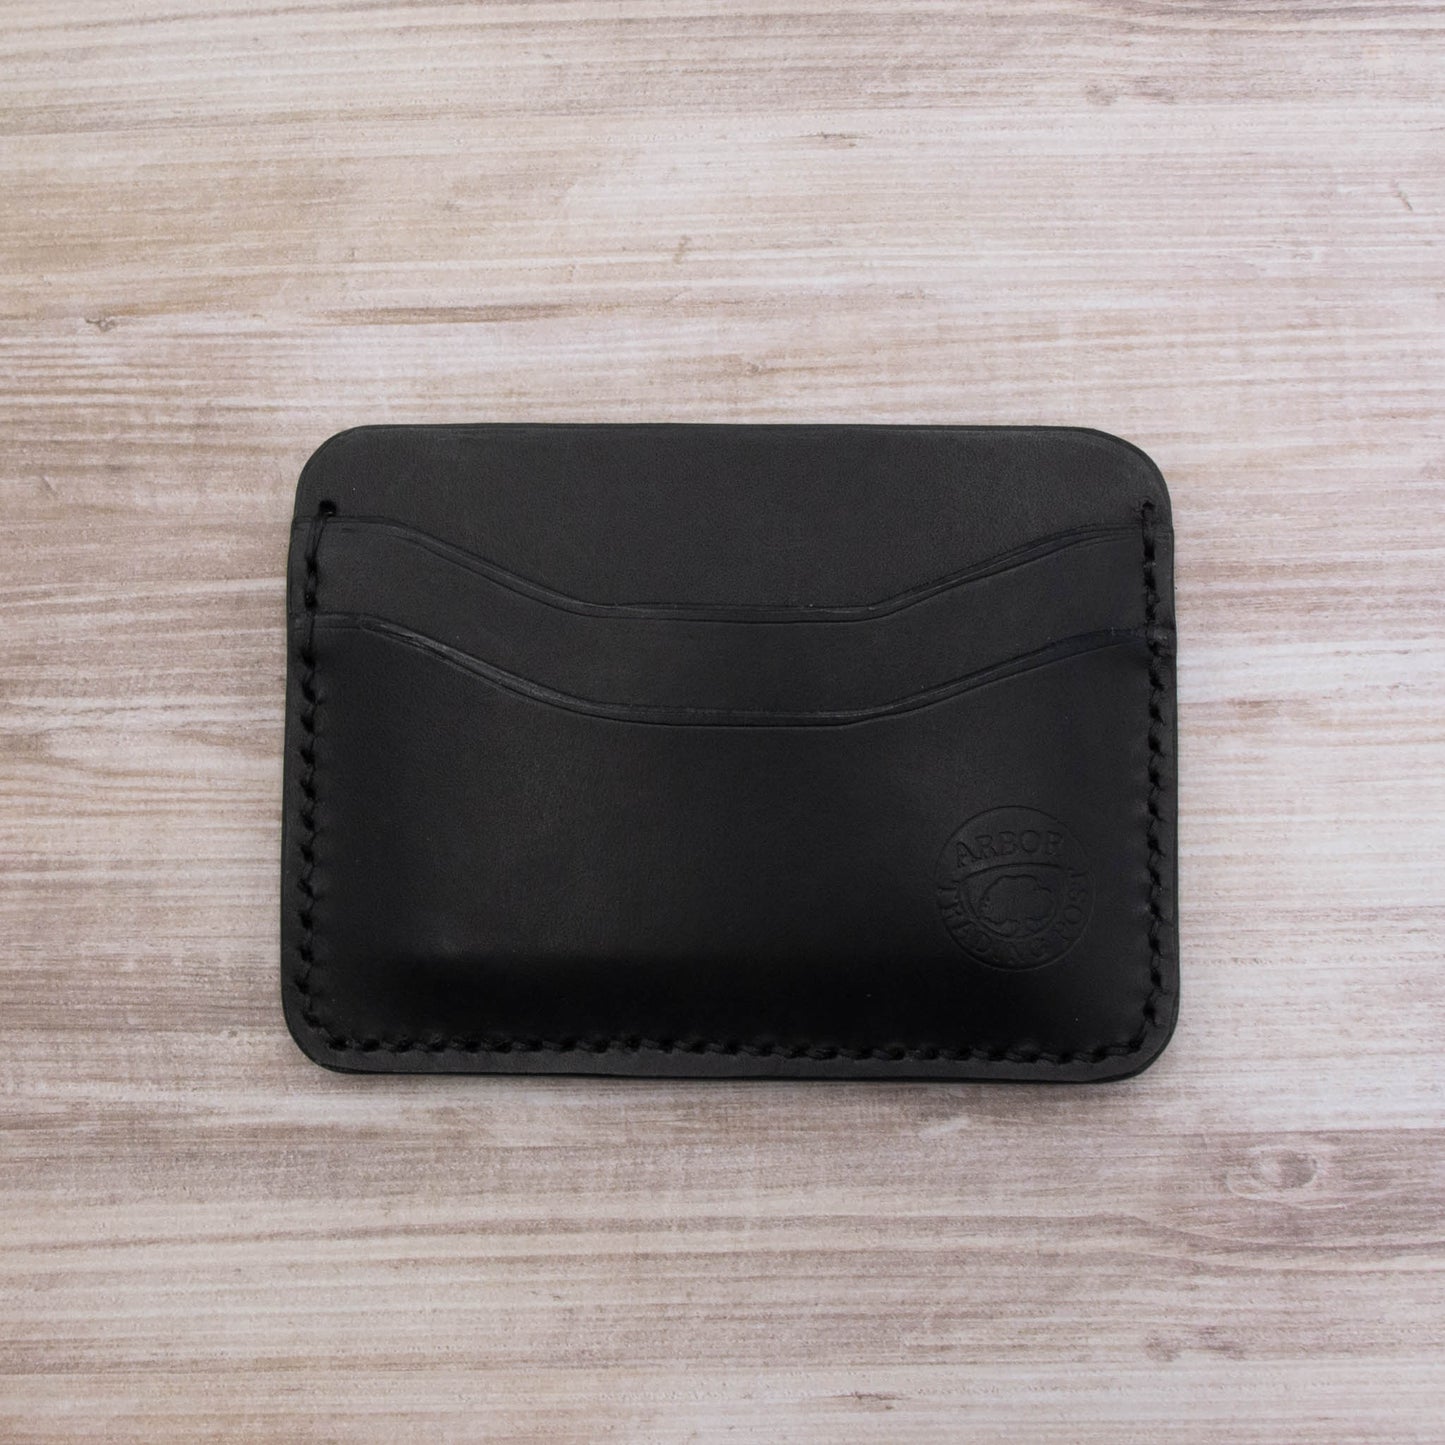 Arbor Trading Post Slim Card Holder Wallet Black Handcrafted Leather 5-Pocket Slim Card Holder Wallet